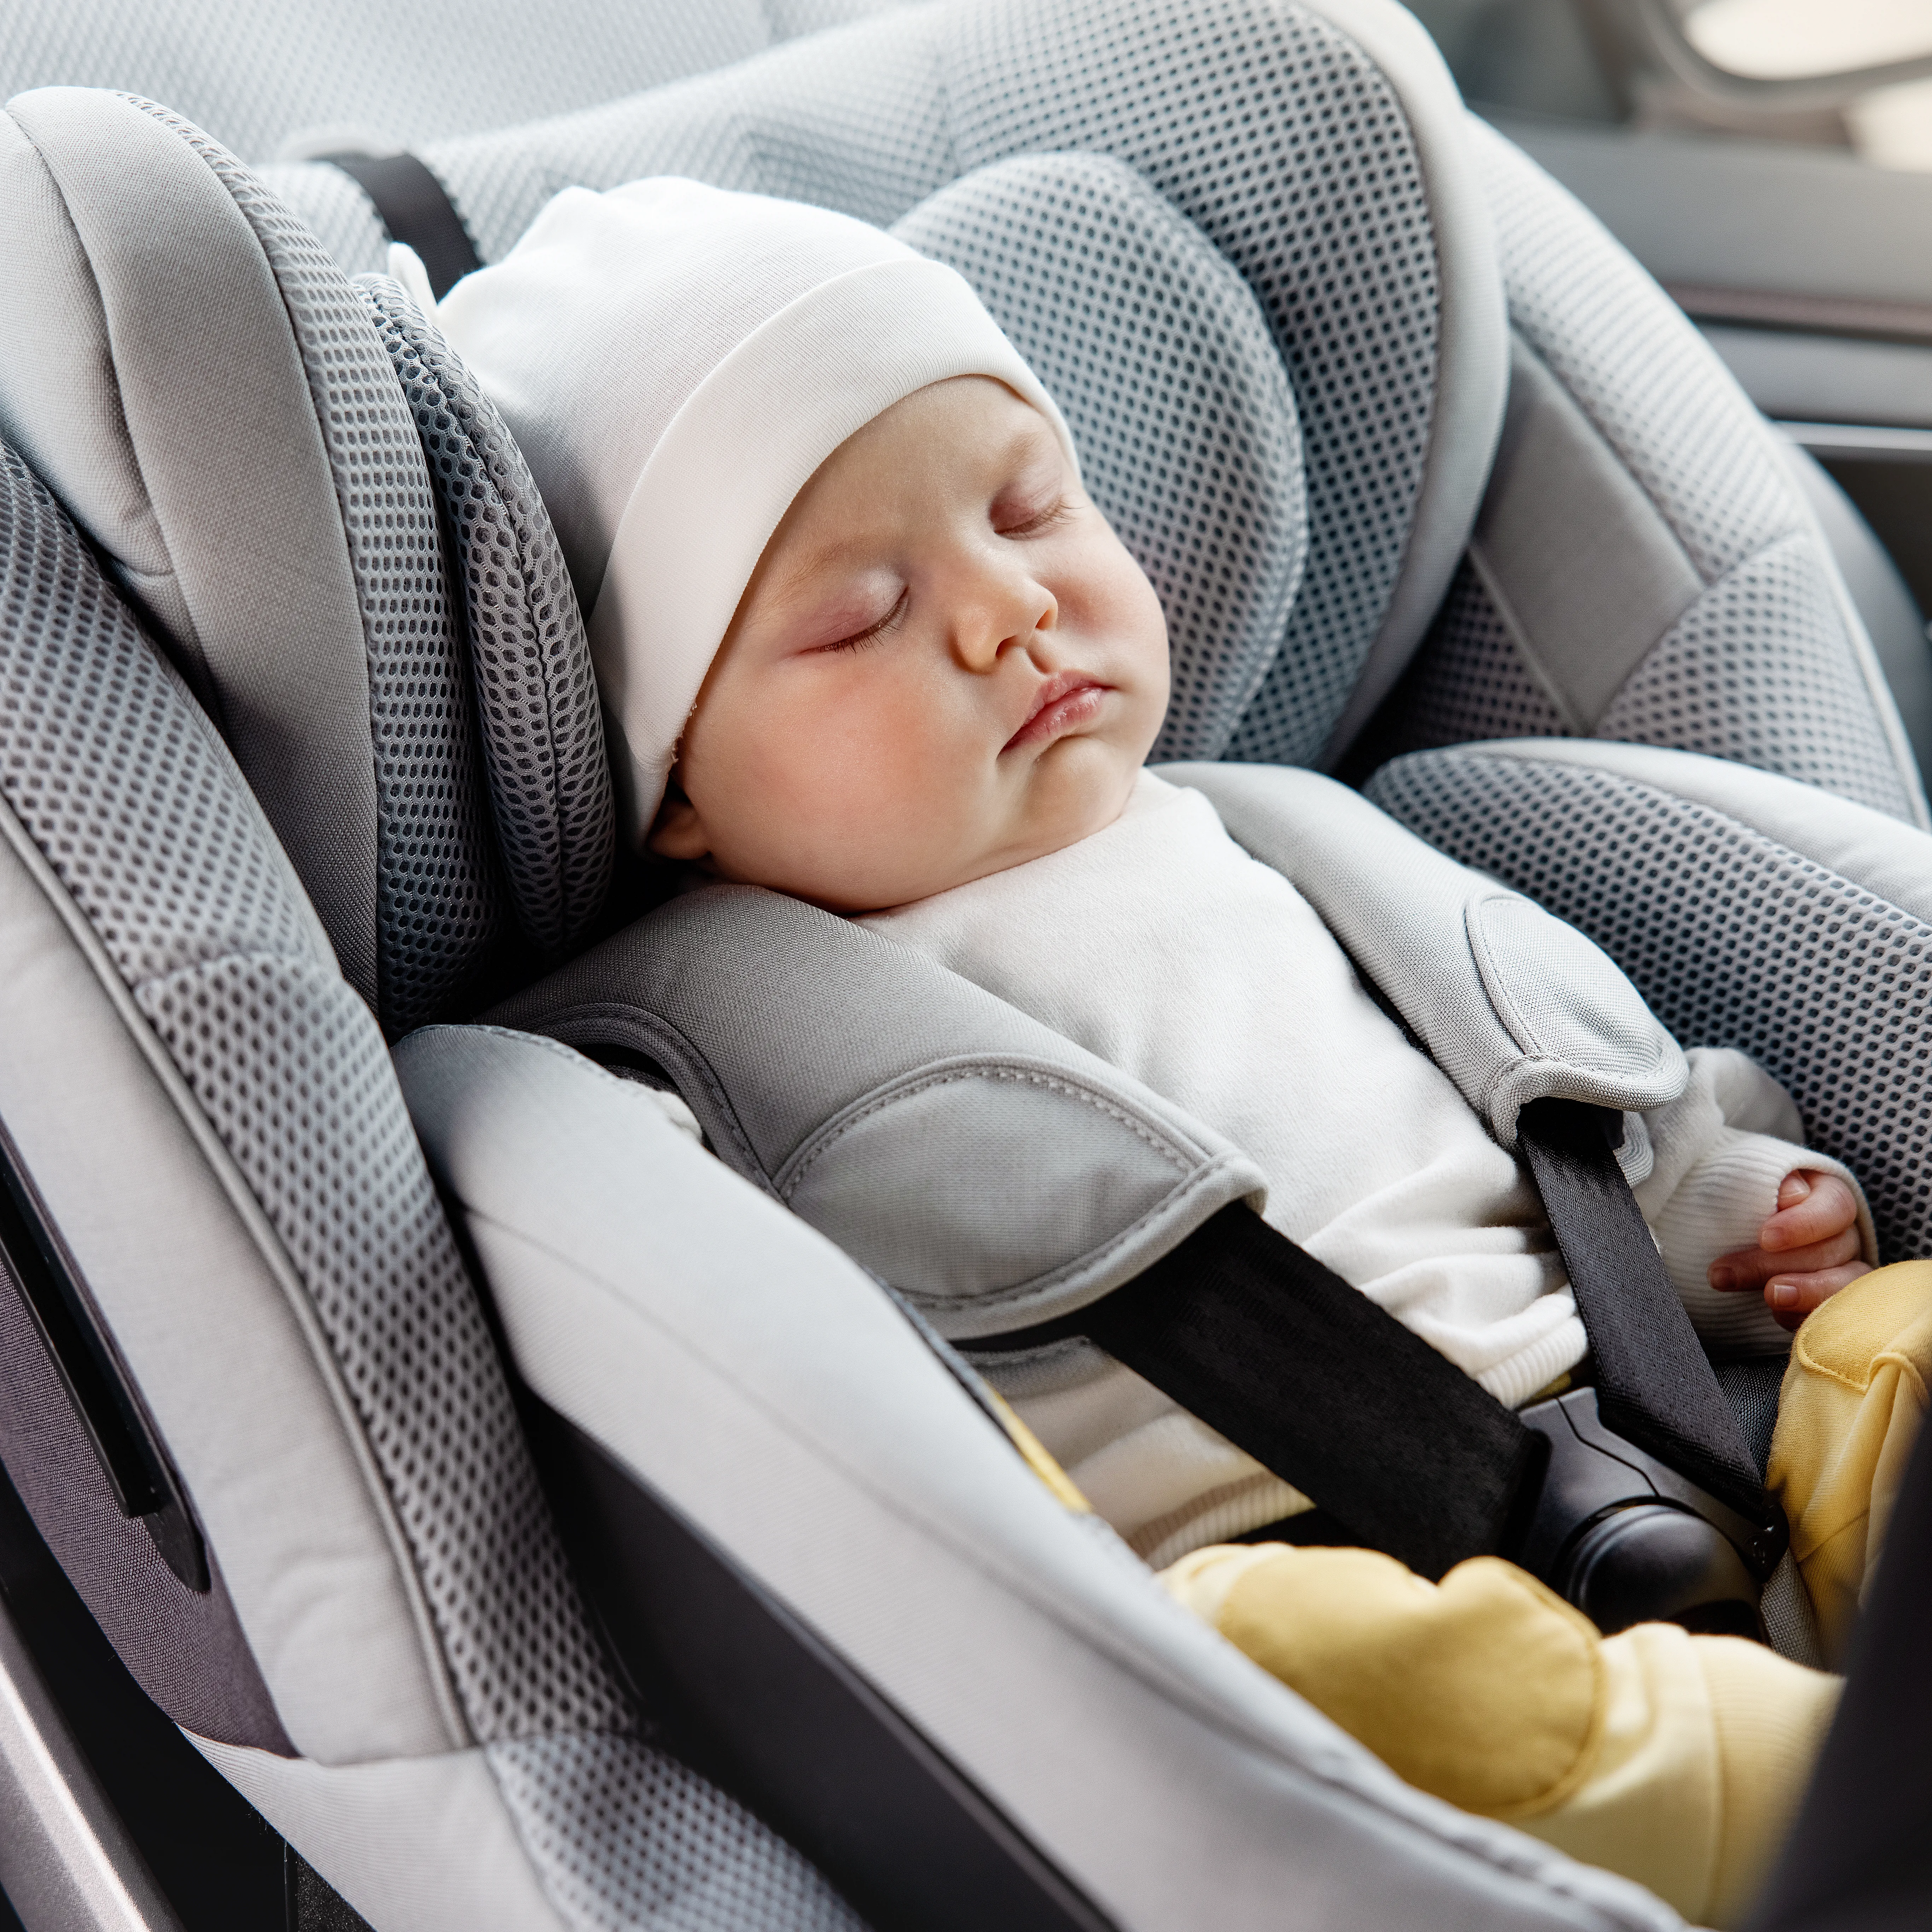 Un siège-auto connecté pour une meilleure sécurité - Salon Babyboom